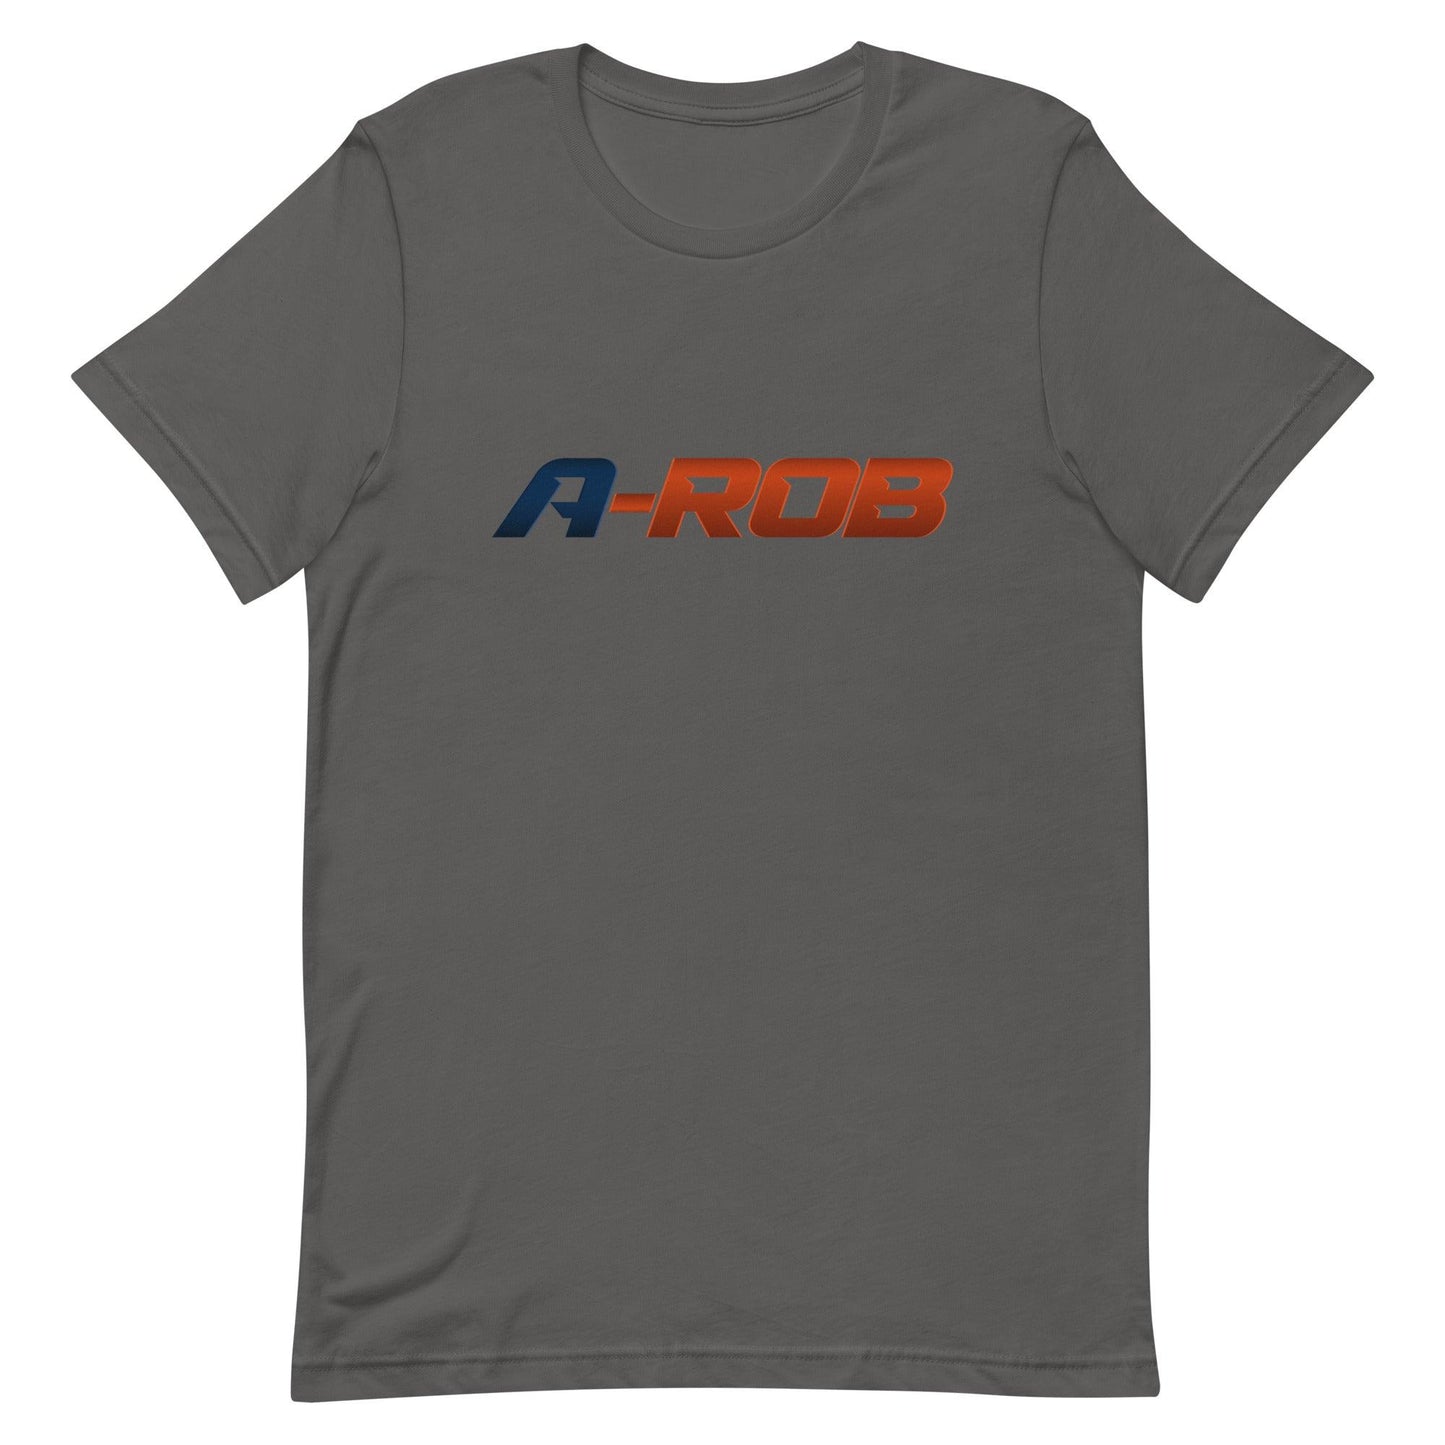 Anthony Robinson "A-ROB" t-shirt - Fan Arch